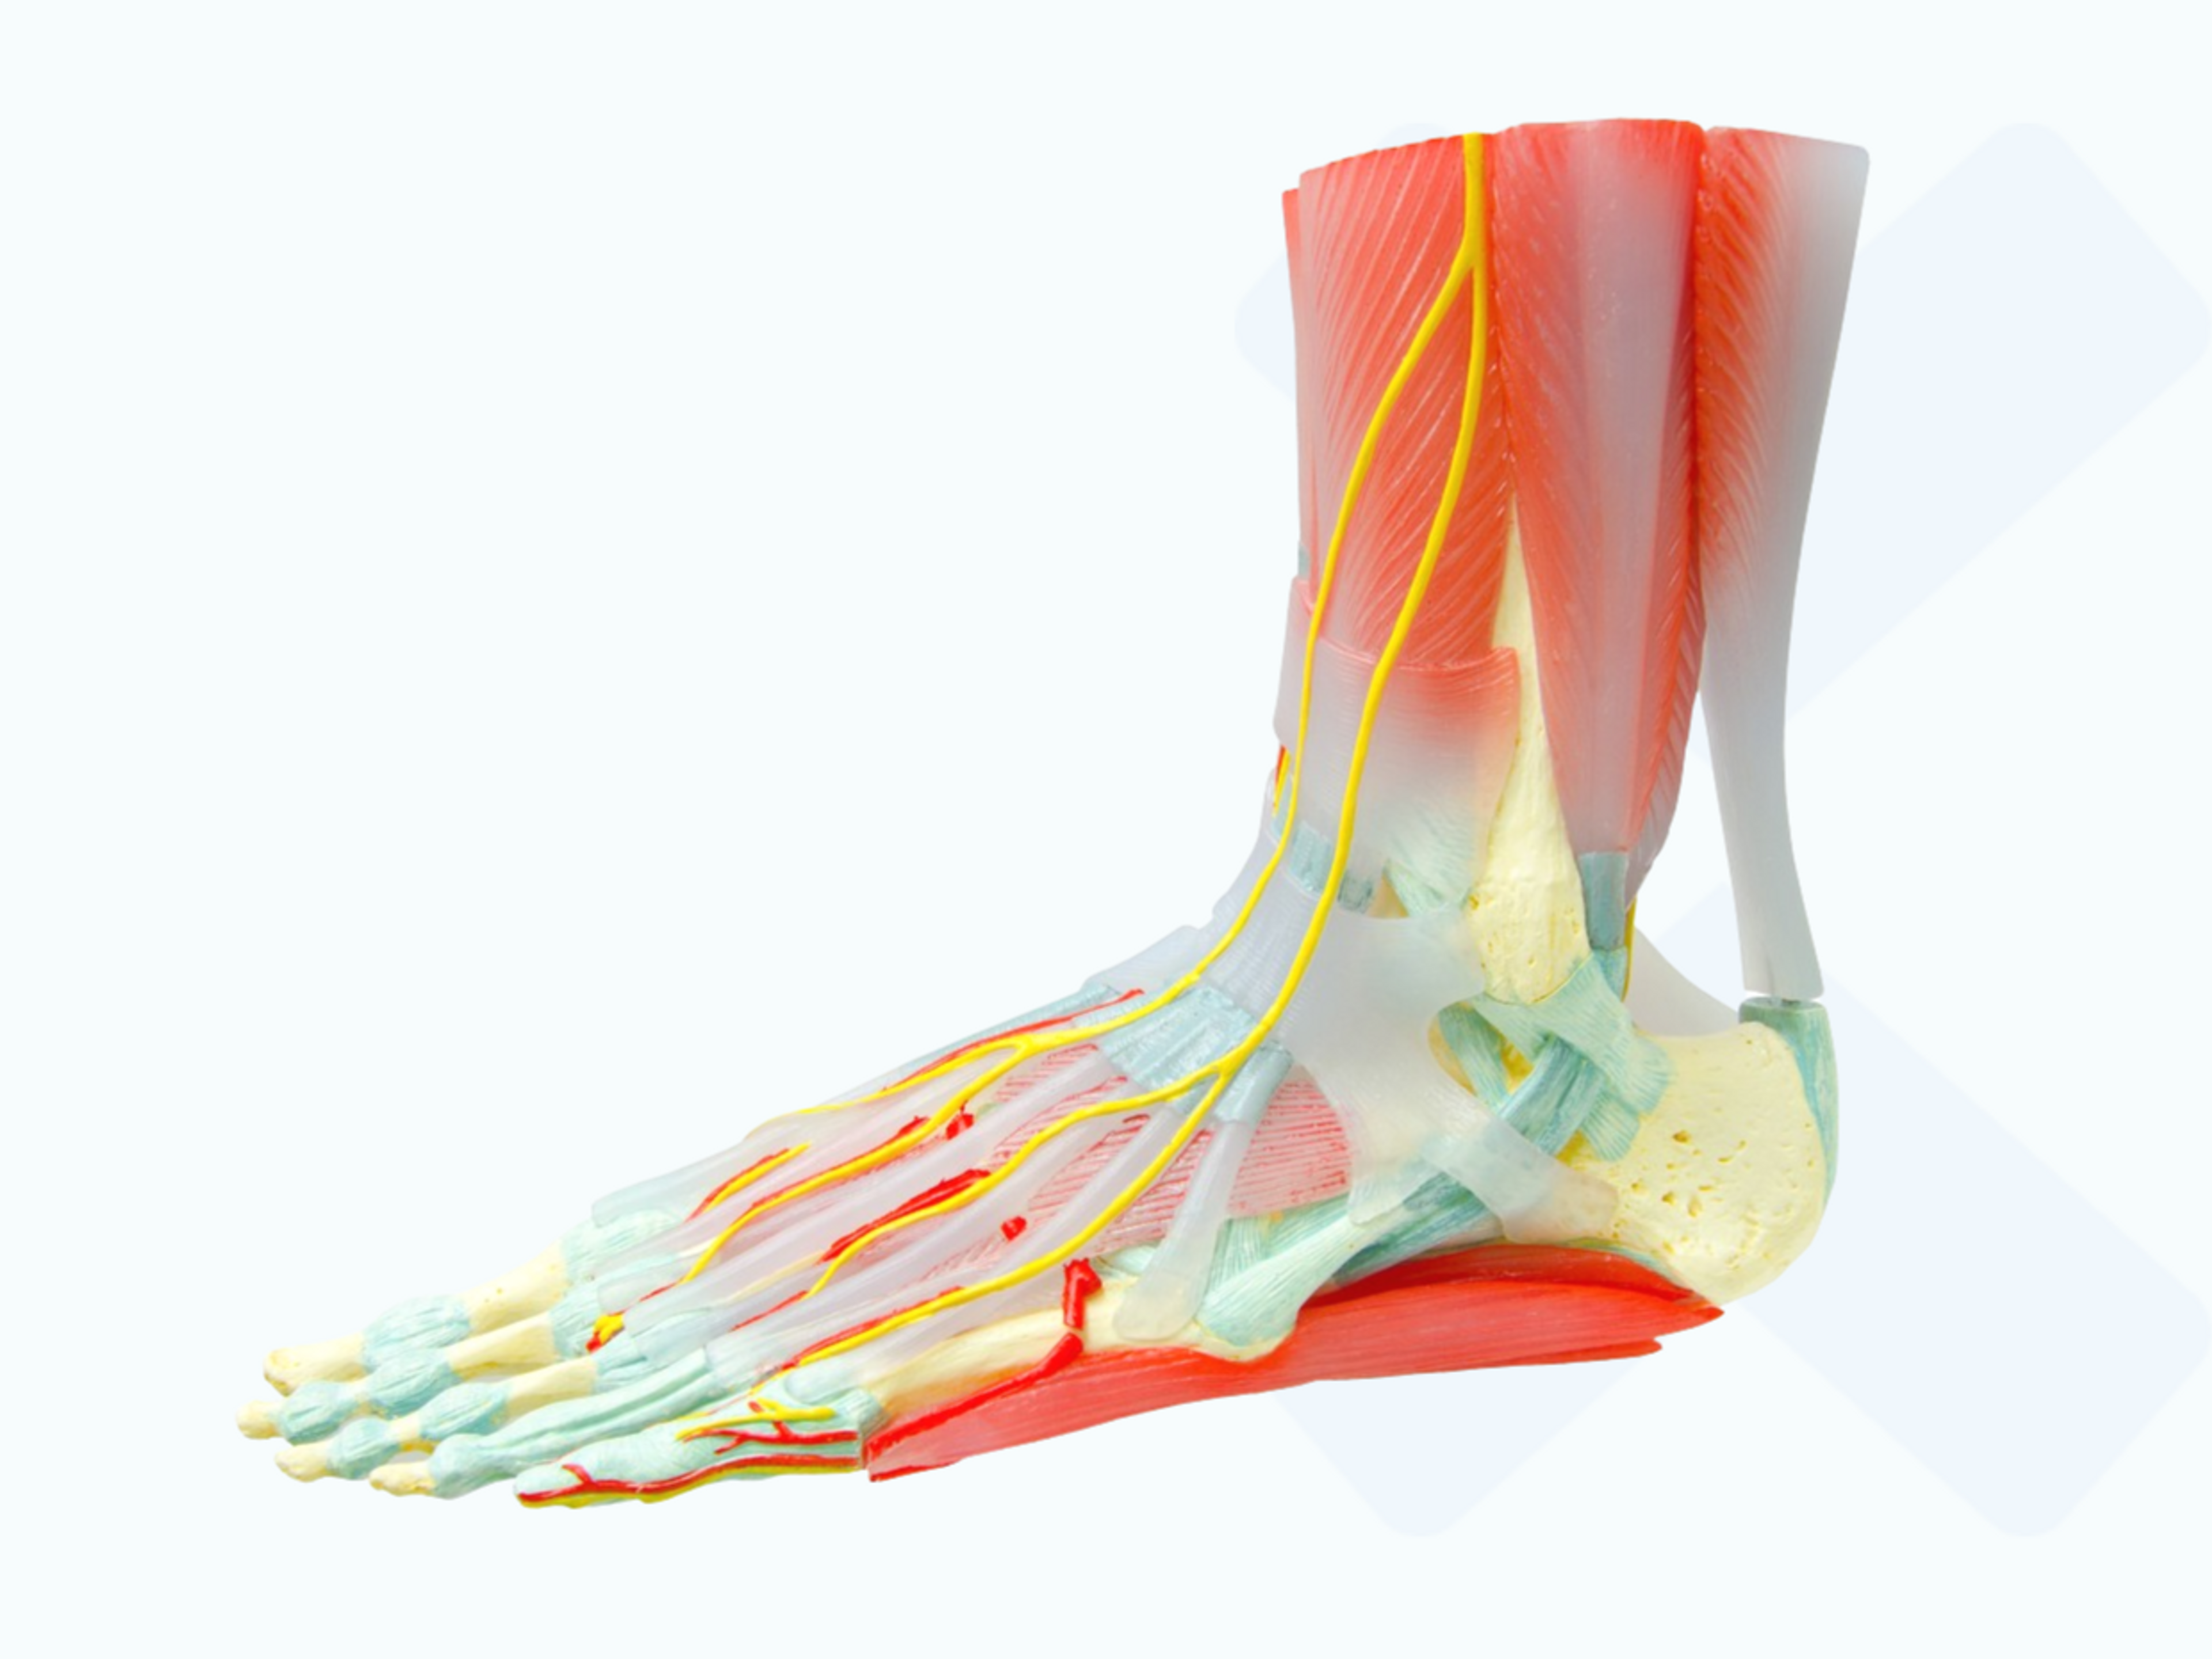 Plusieurs tendons traversent l’articulation de la cheville, contribuant à sa stabilité.